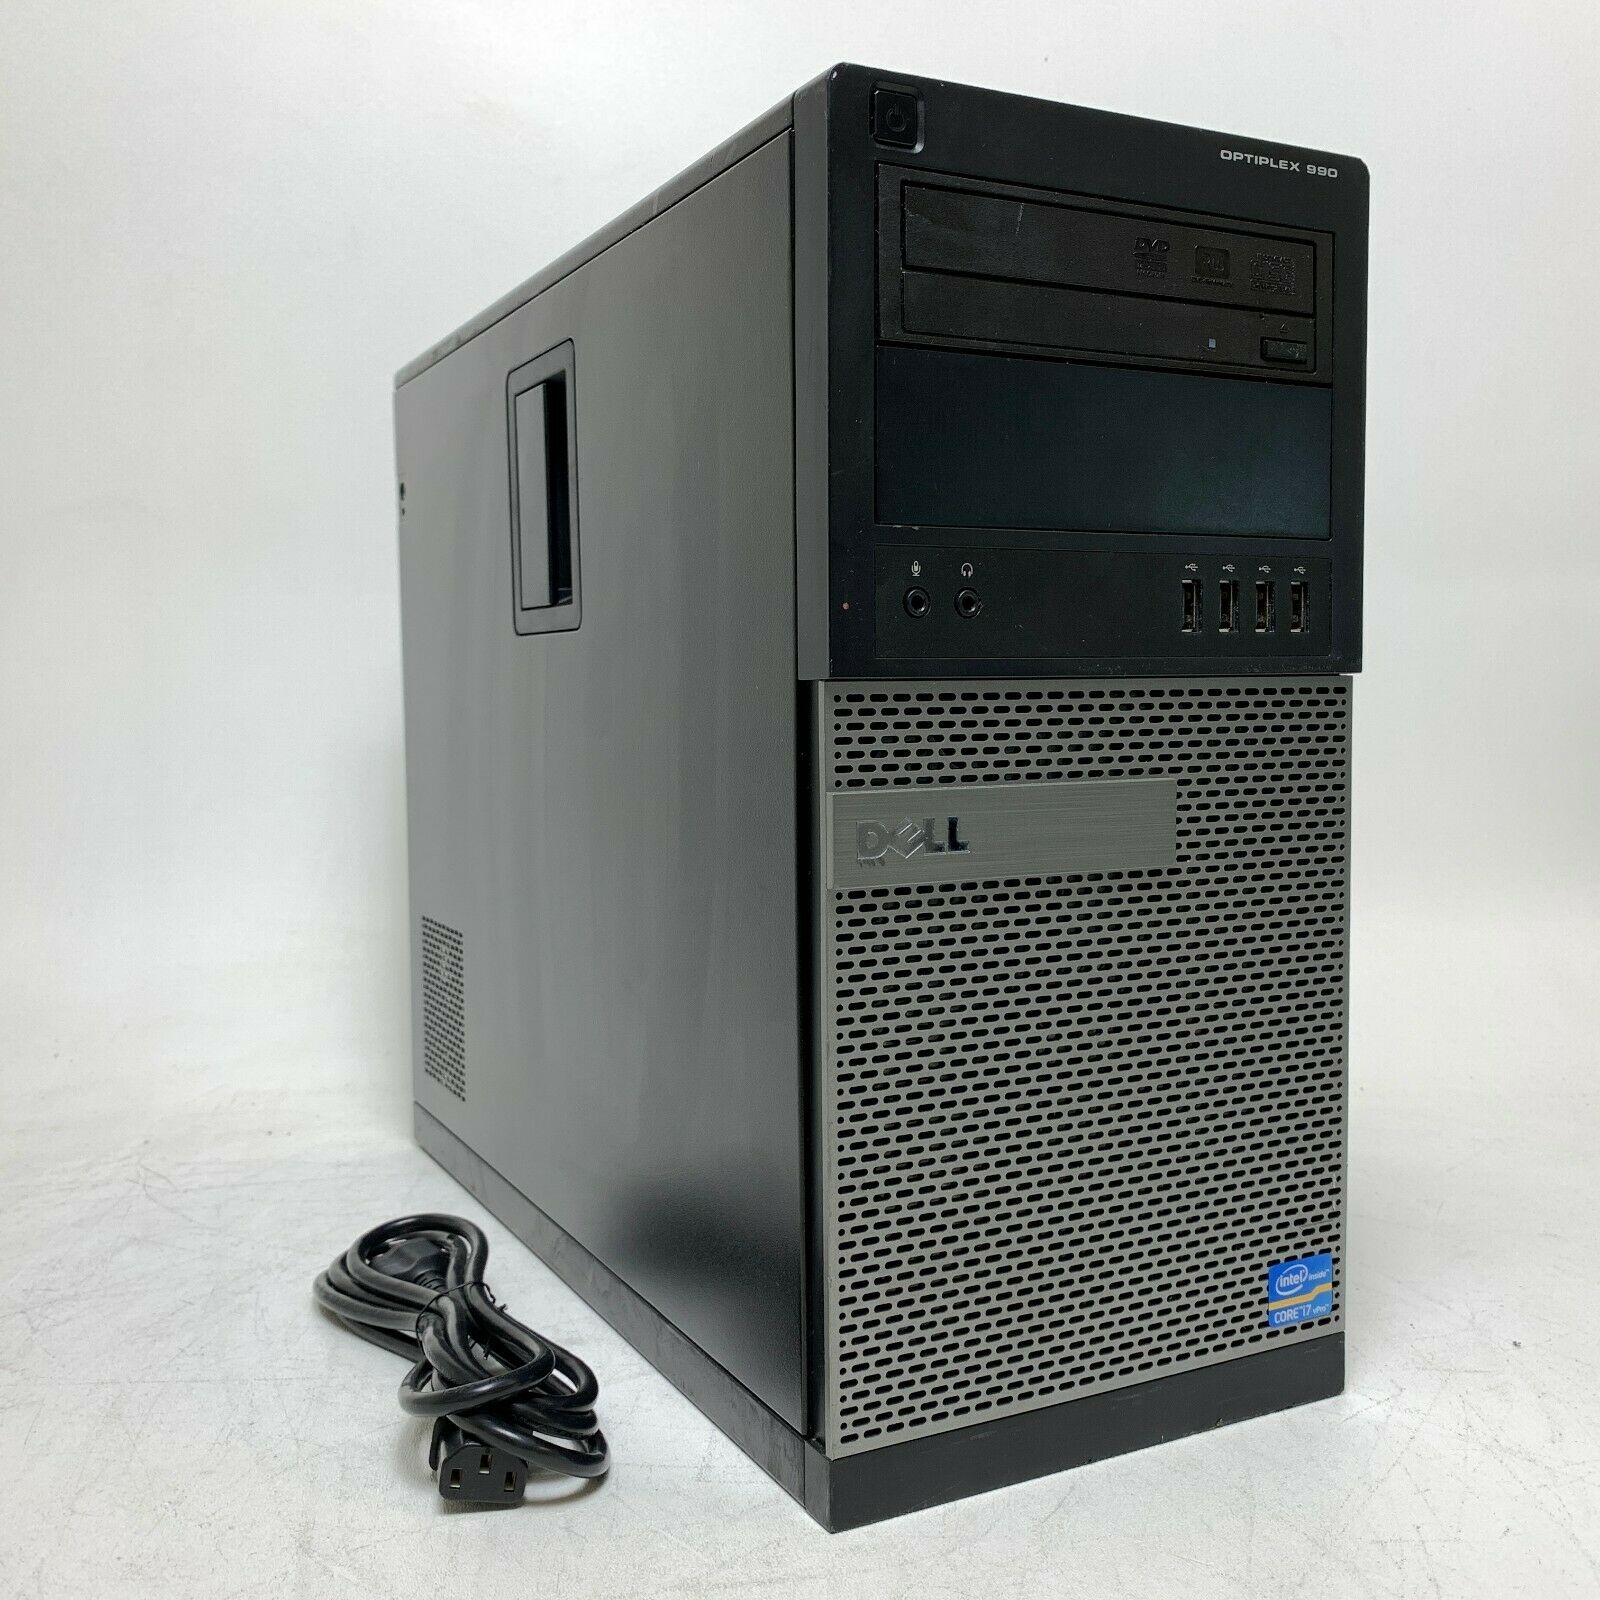 Dell OptiPlex 990 MT Desktop | i7-2600 3.4GHz | 4GB RAM | 500GB